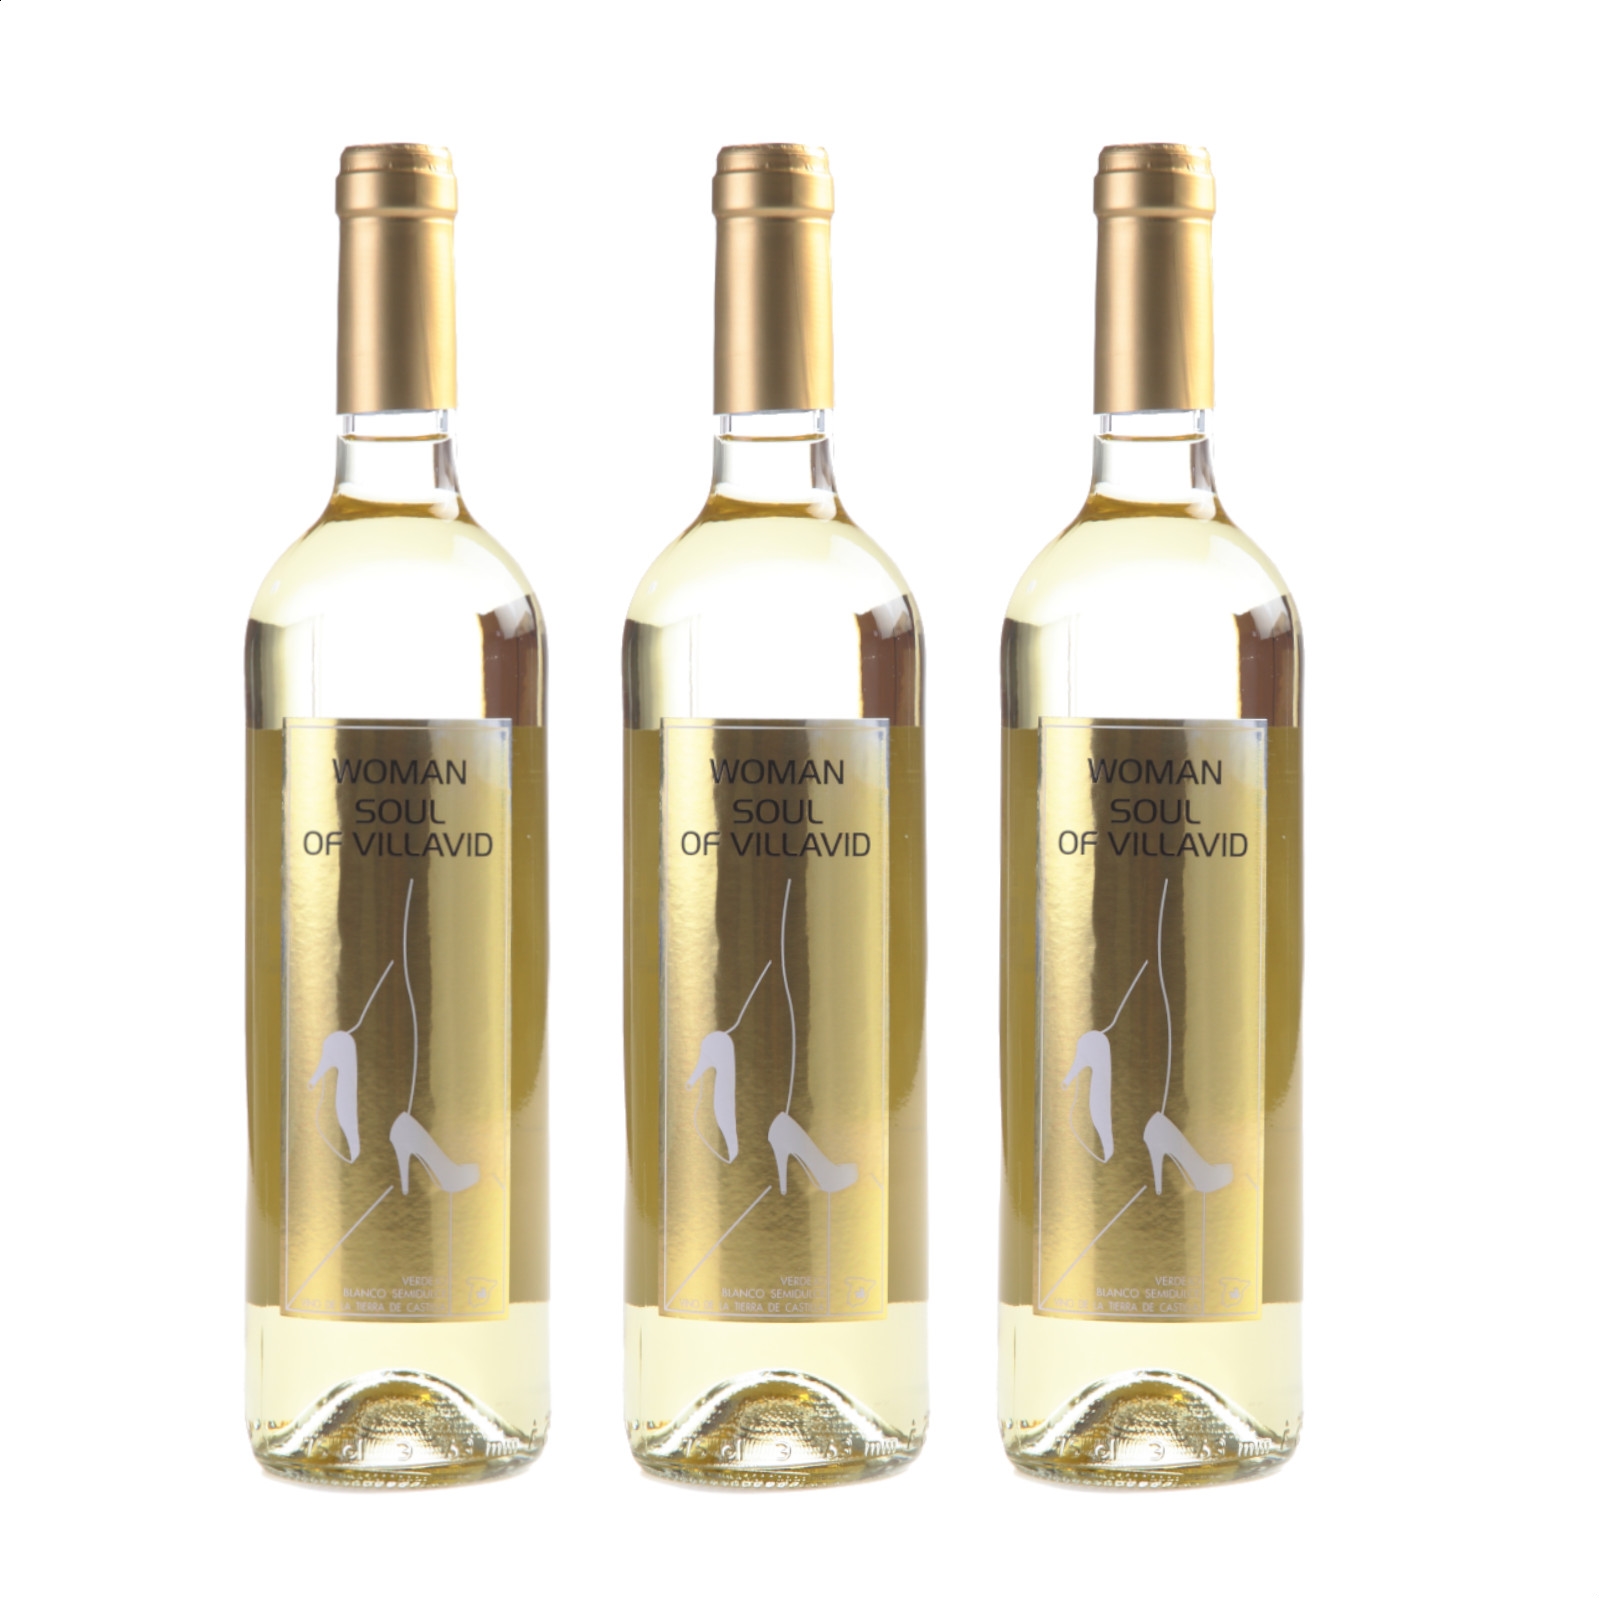 Bodegas Villavid - Woman Soul semidulce blanco IGP Vino de la Tierra de Castilla 75cl, 3uds